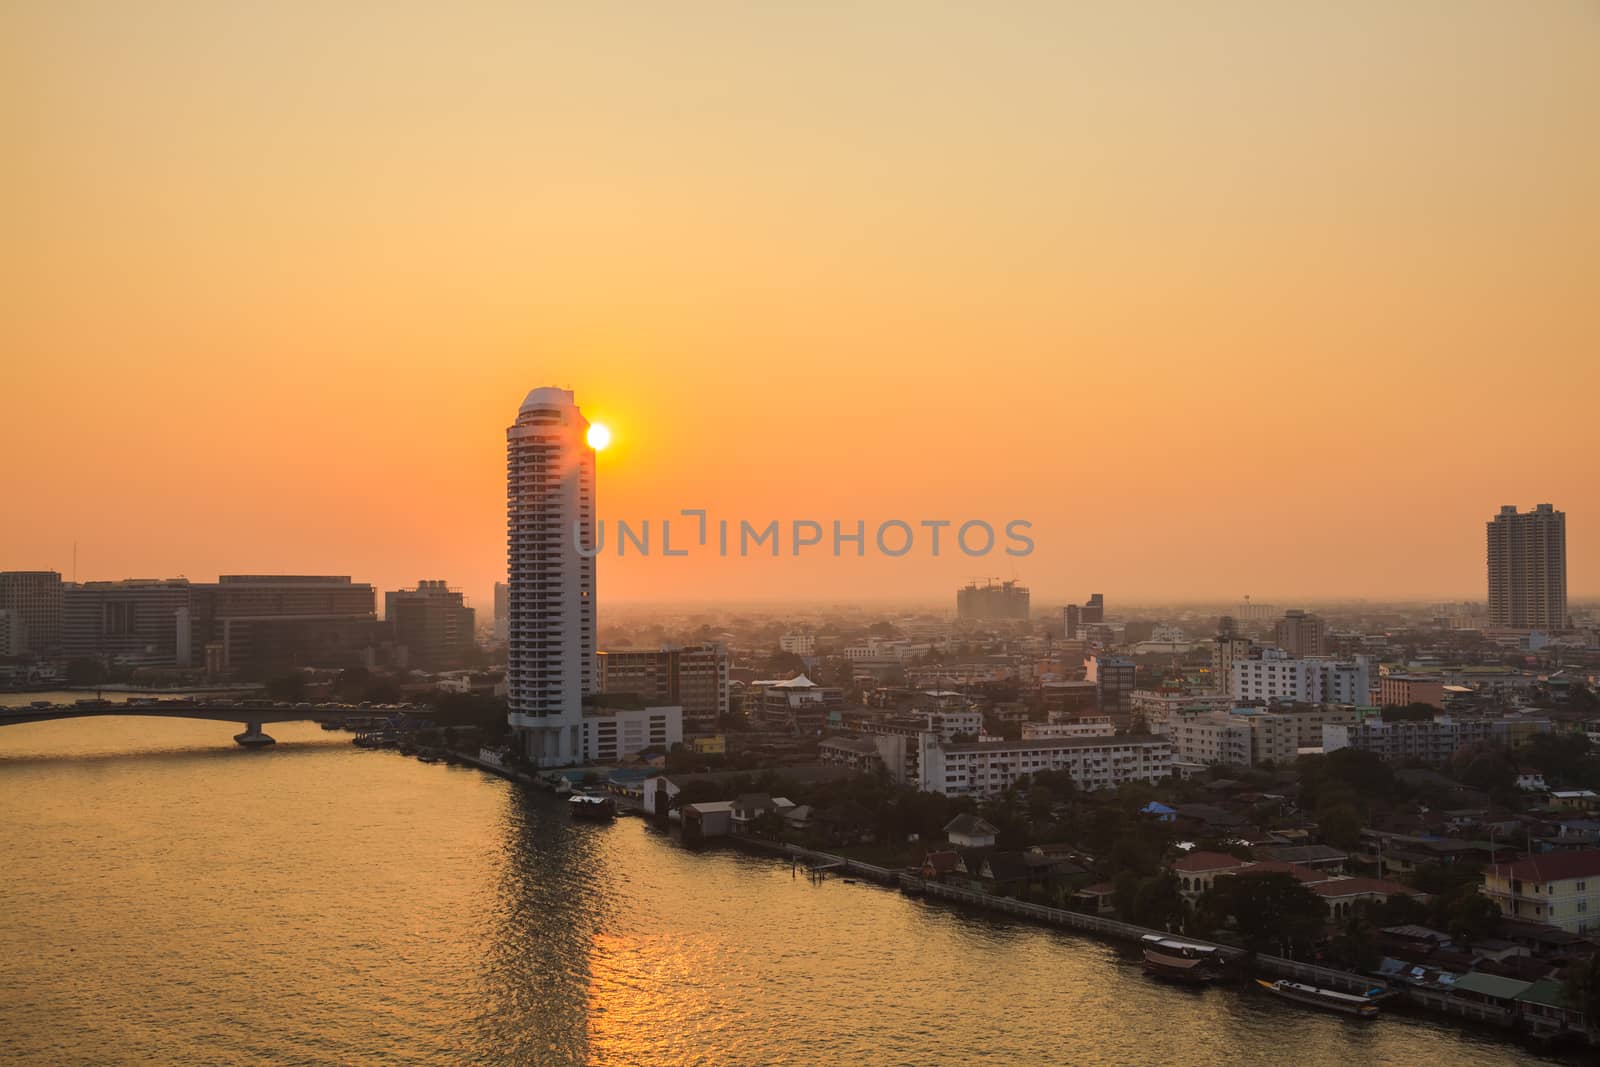 Sunset at the Chao Phraya River in Bangkok, Thailand